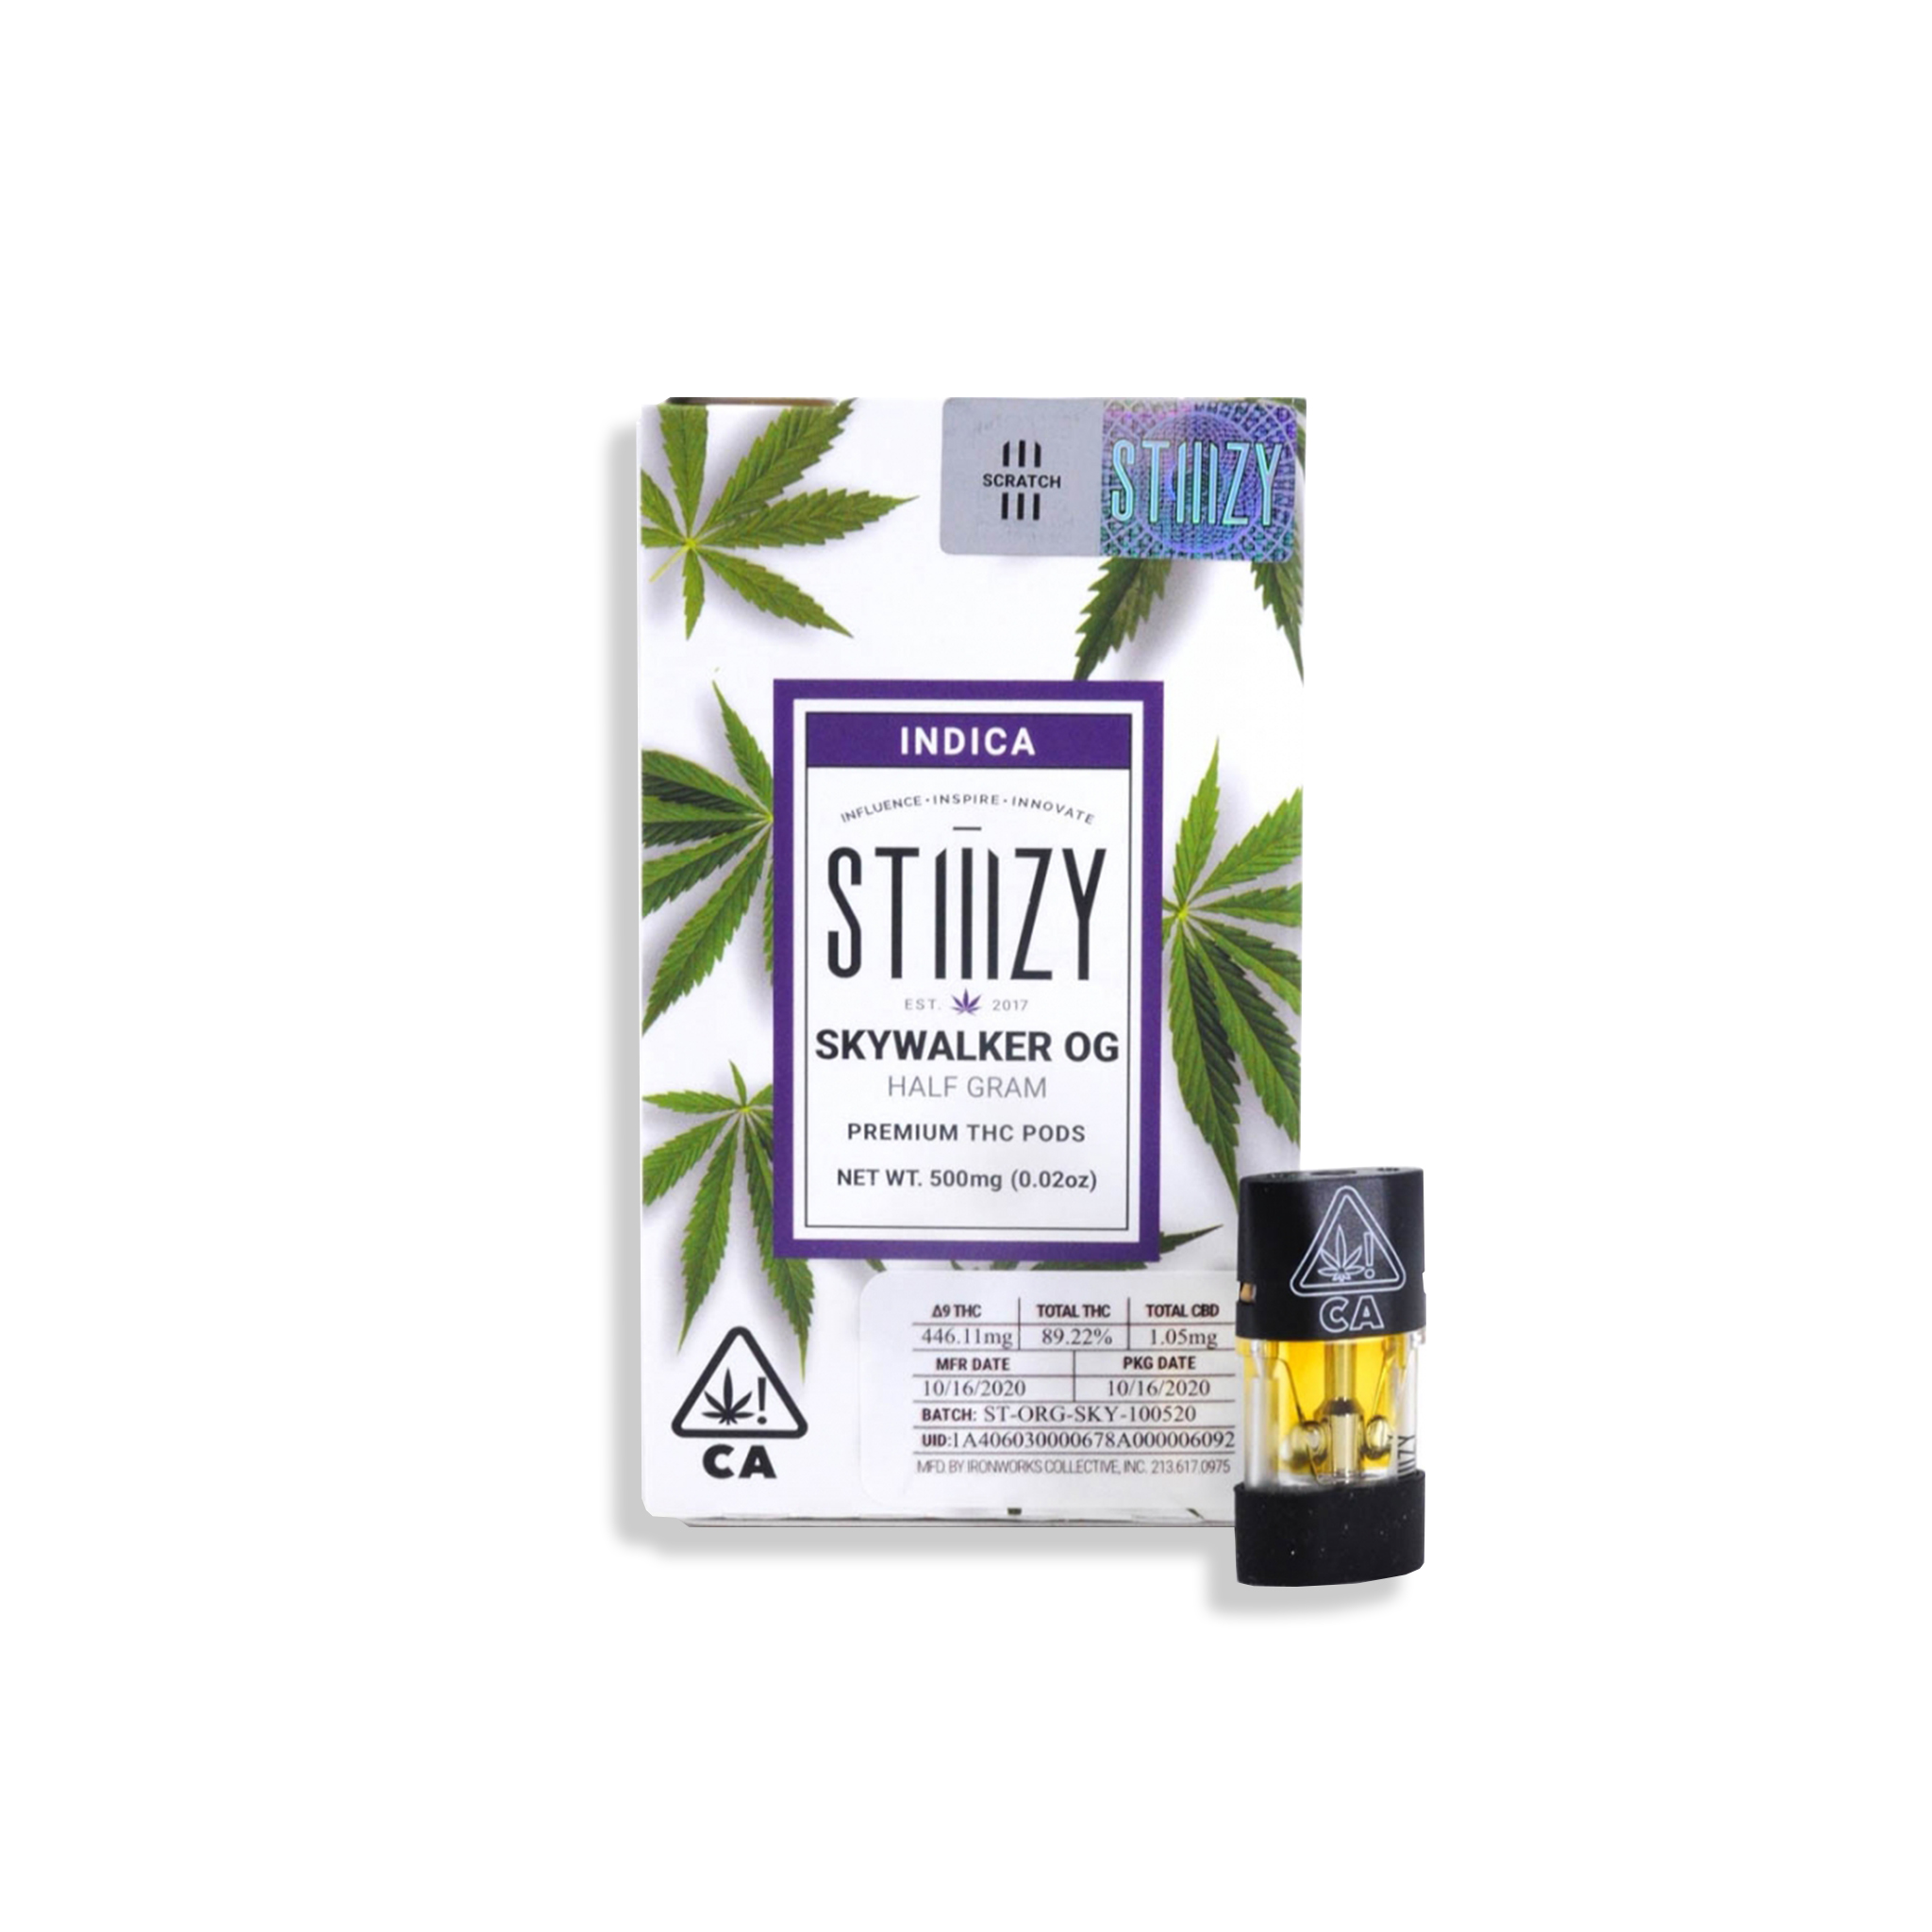 Stiiizy – Smoke & Toke